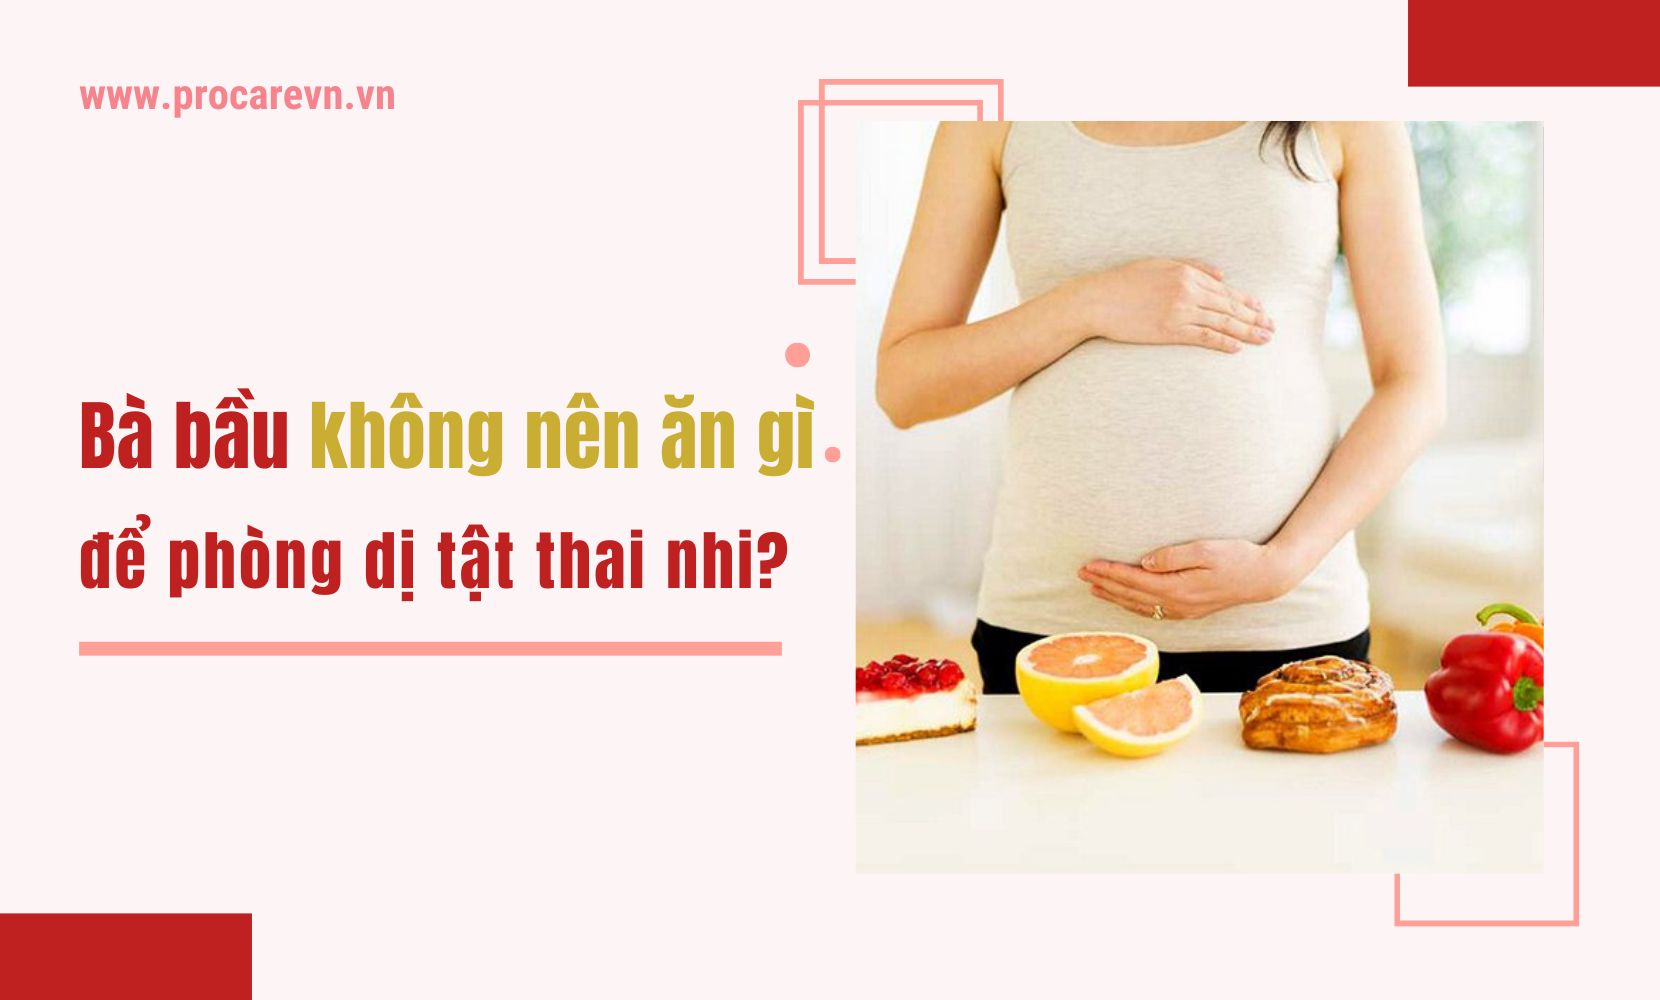 Tại sao mẹ bầu nên tránh ăn thực phẩm chứa chất xơ ít?
